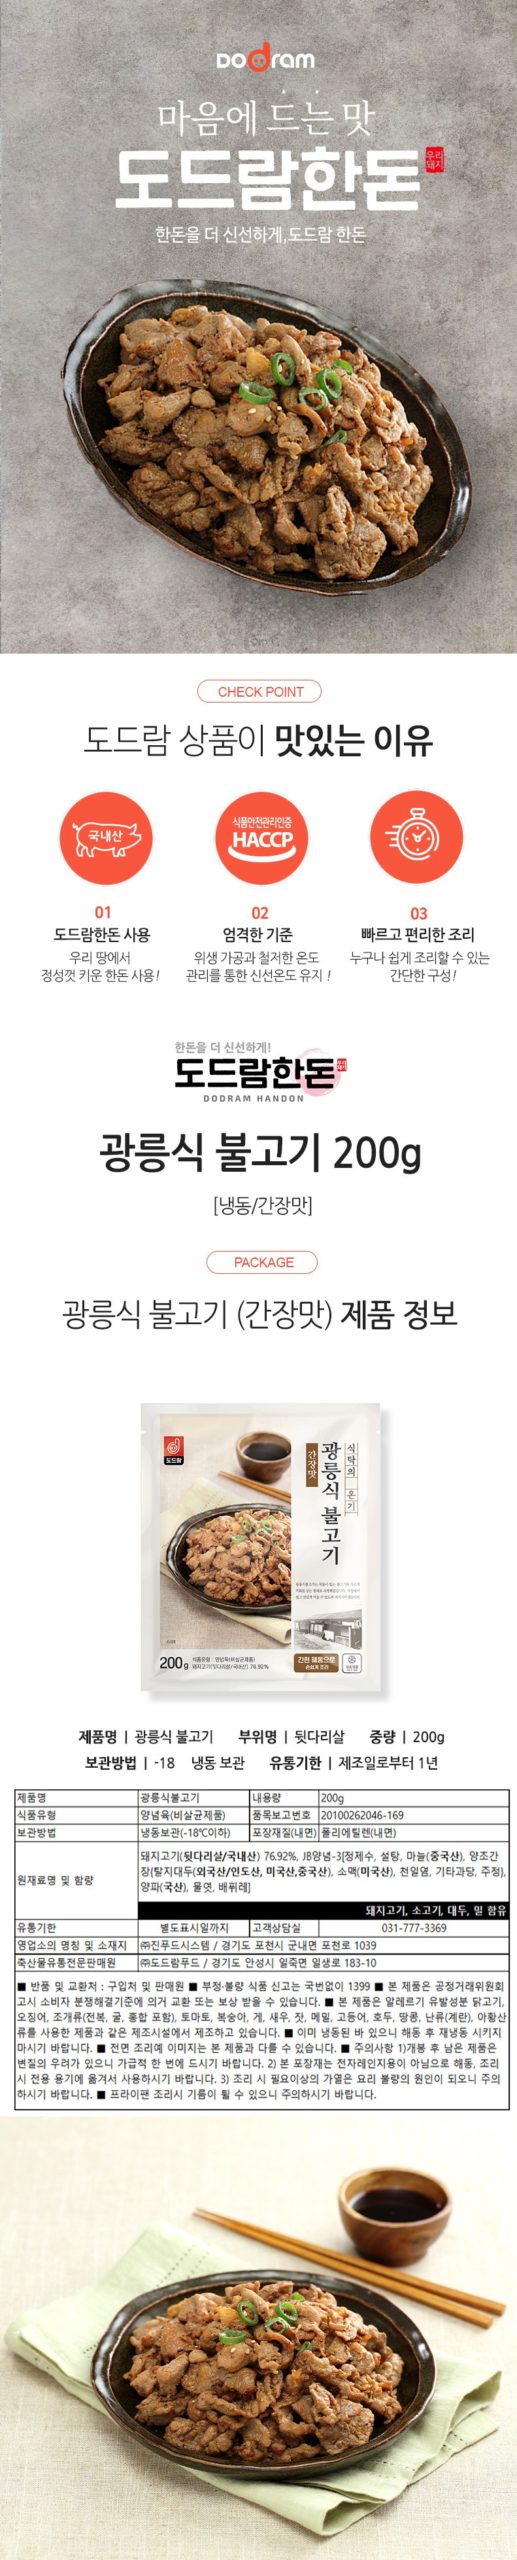 韓國食品-[Dodram] 光陵式烤肉 (醬油味) 200g